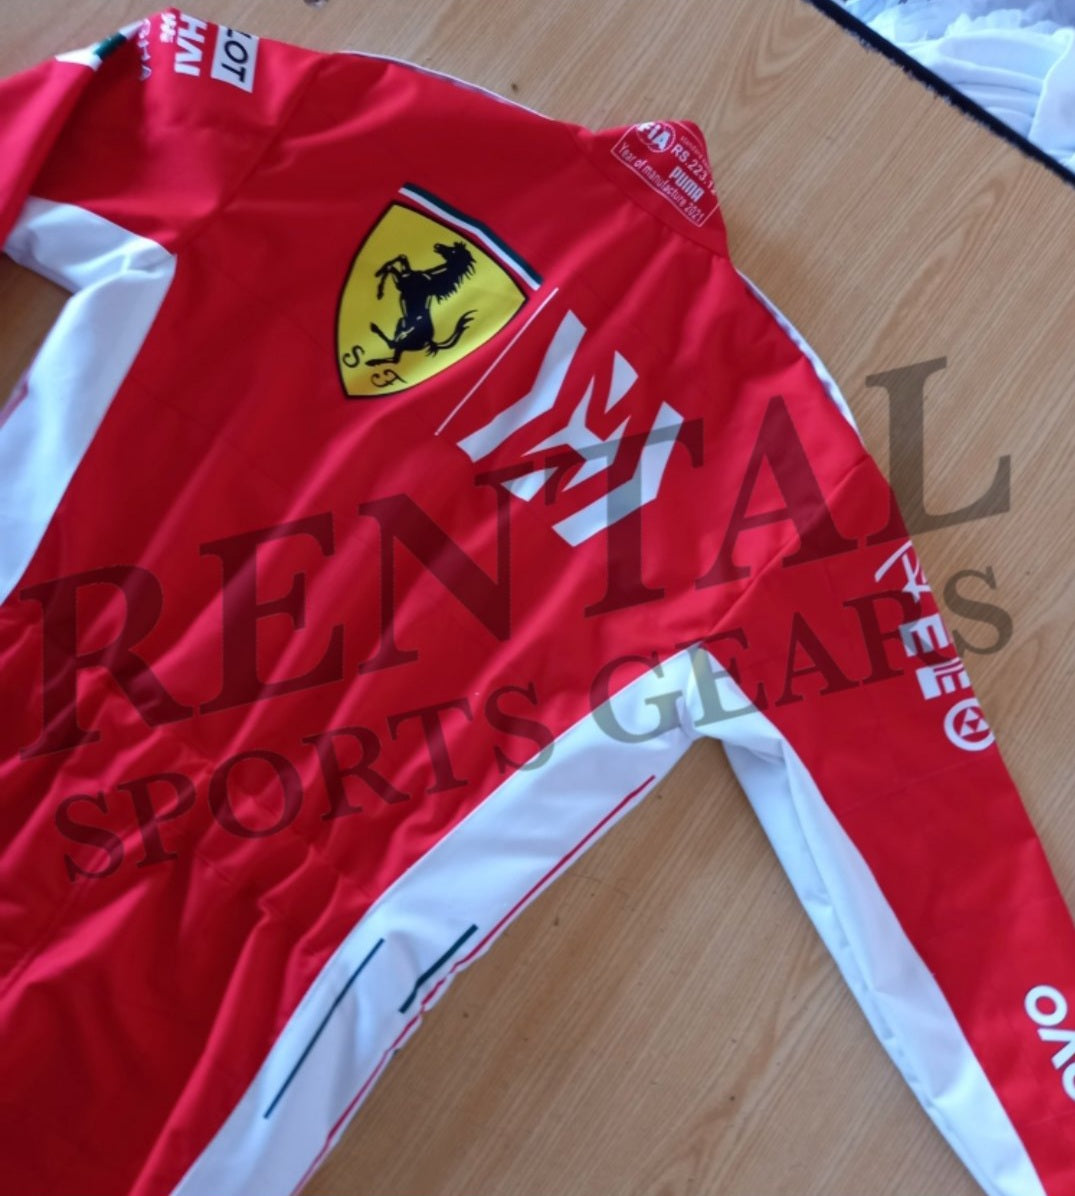 Kimi Räikkönen 2018 F1 Race Suit Ferrari | F1 Replica Race Suit